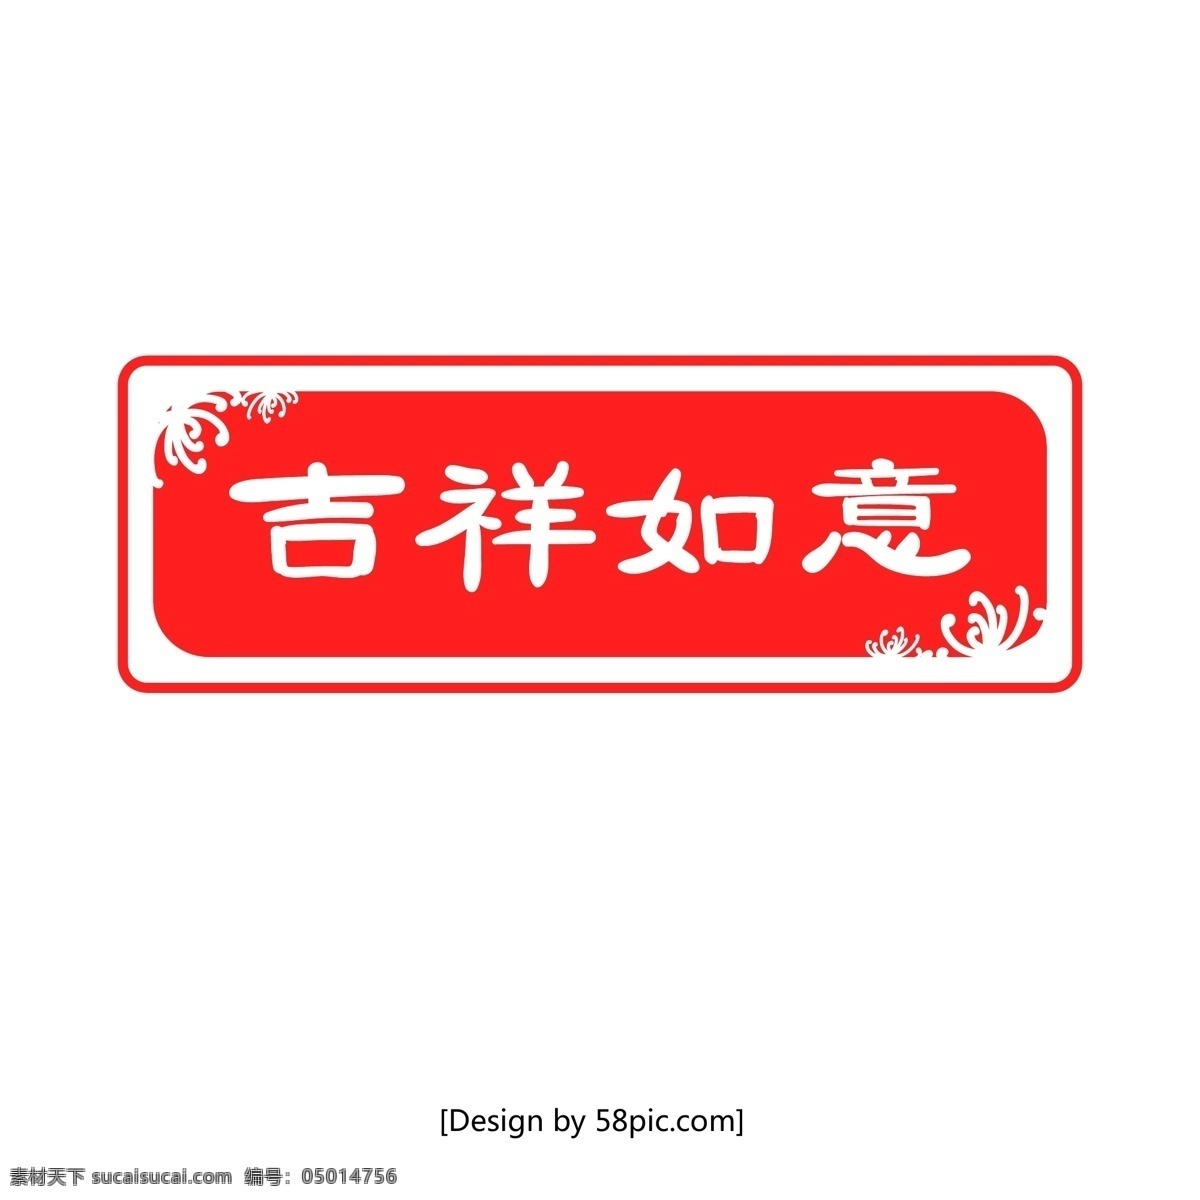 中国 风 红色 吉祥如意 印章 矢量 元素 章 中国风 设计元素 矢量印章 祝福印章 红色印章 印章元素 装饰元素 矢量元素